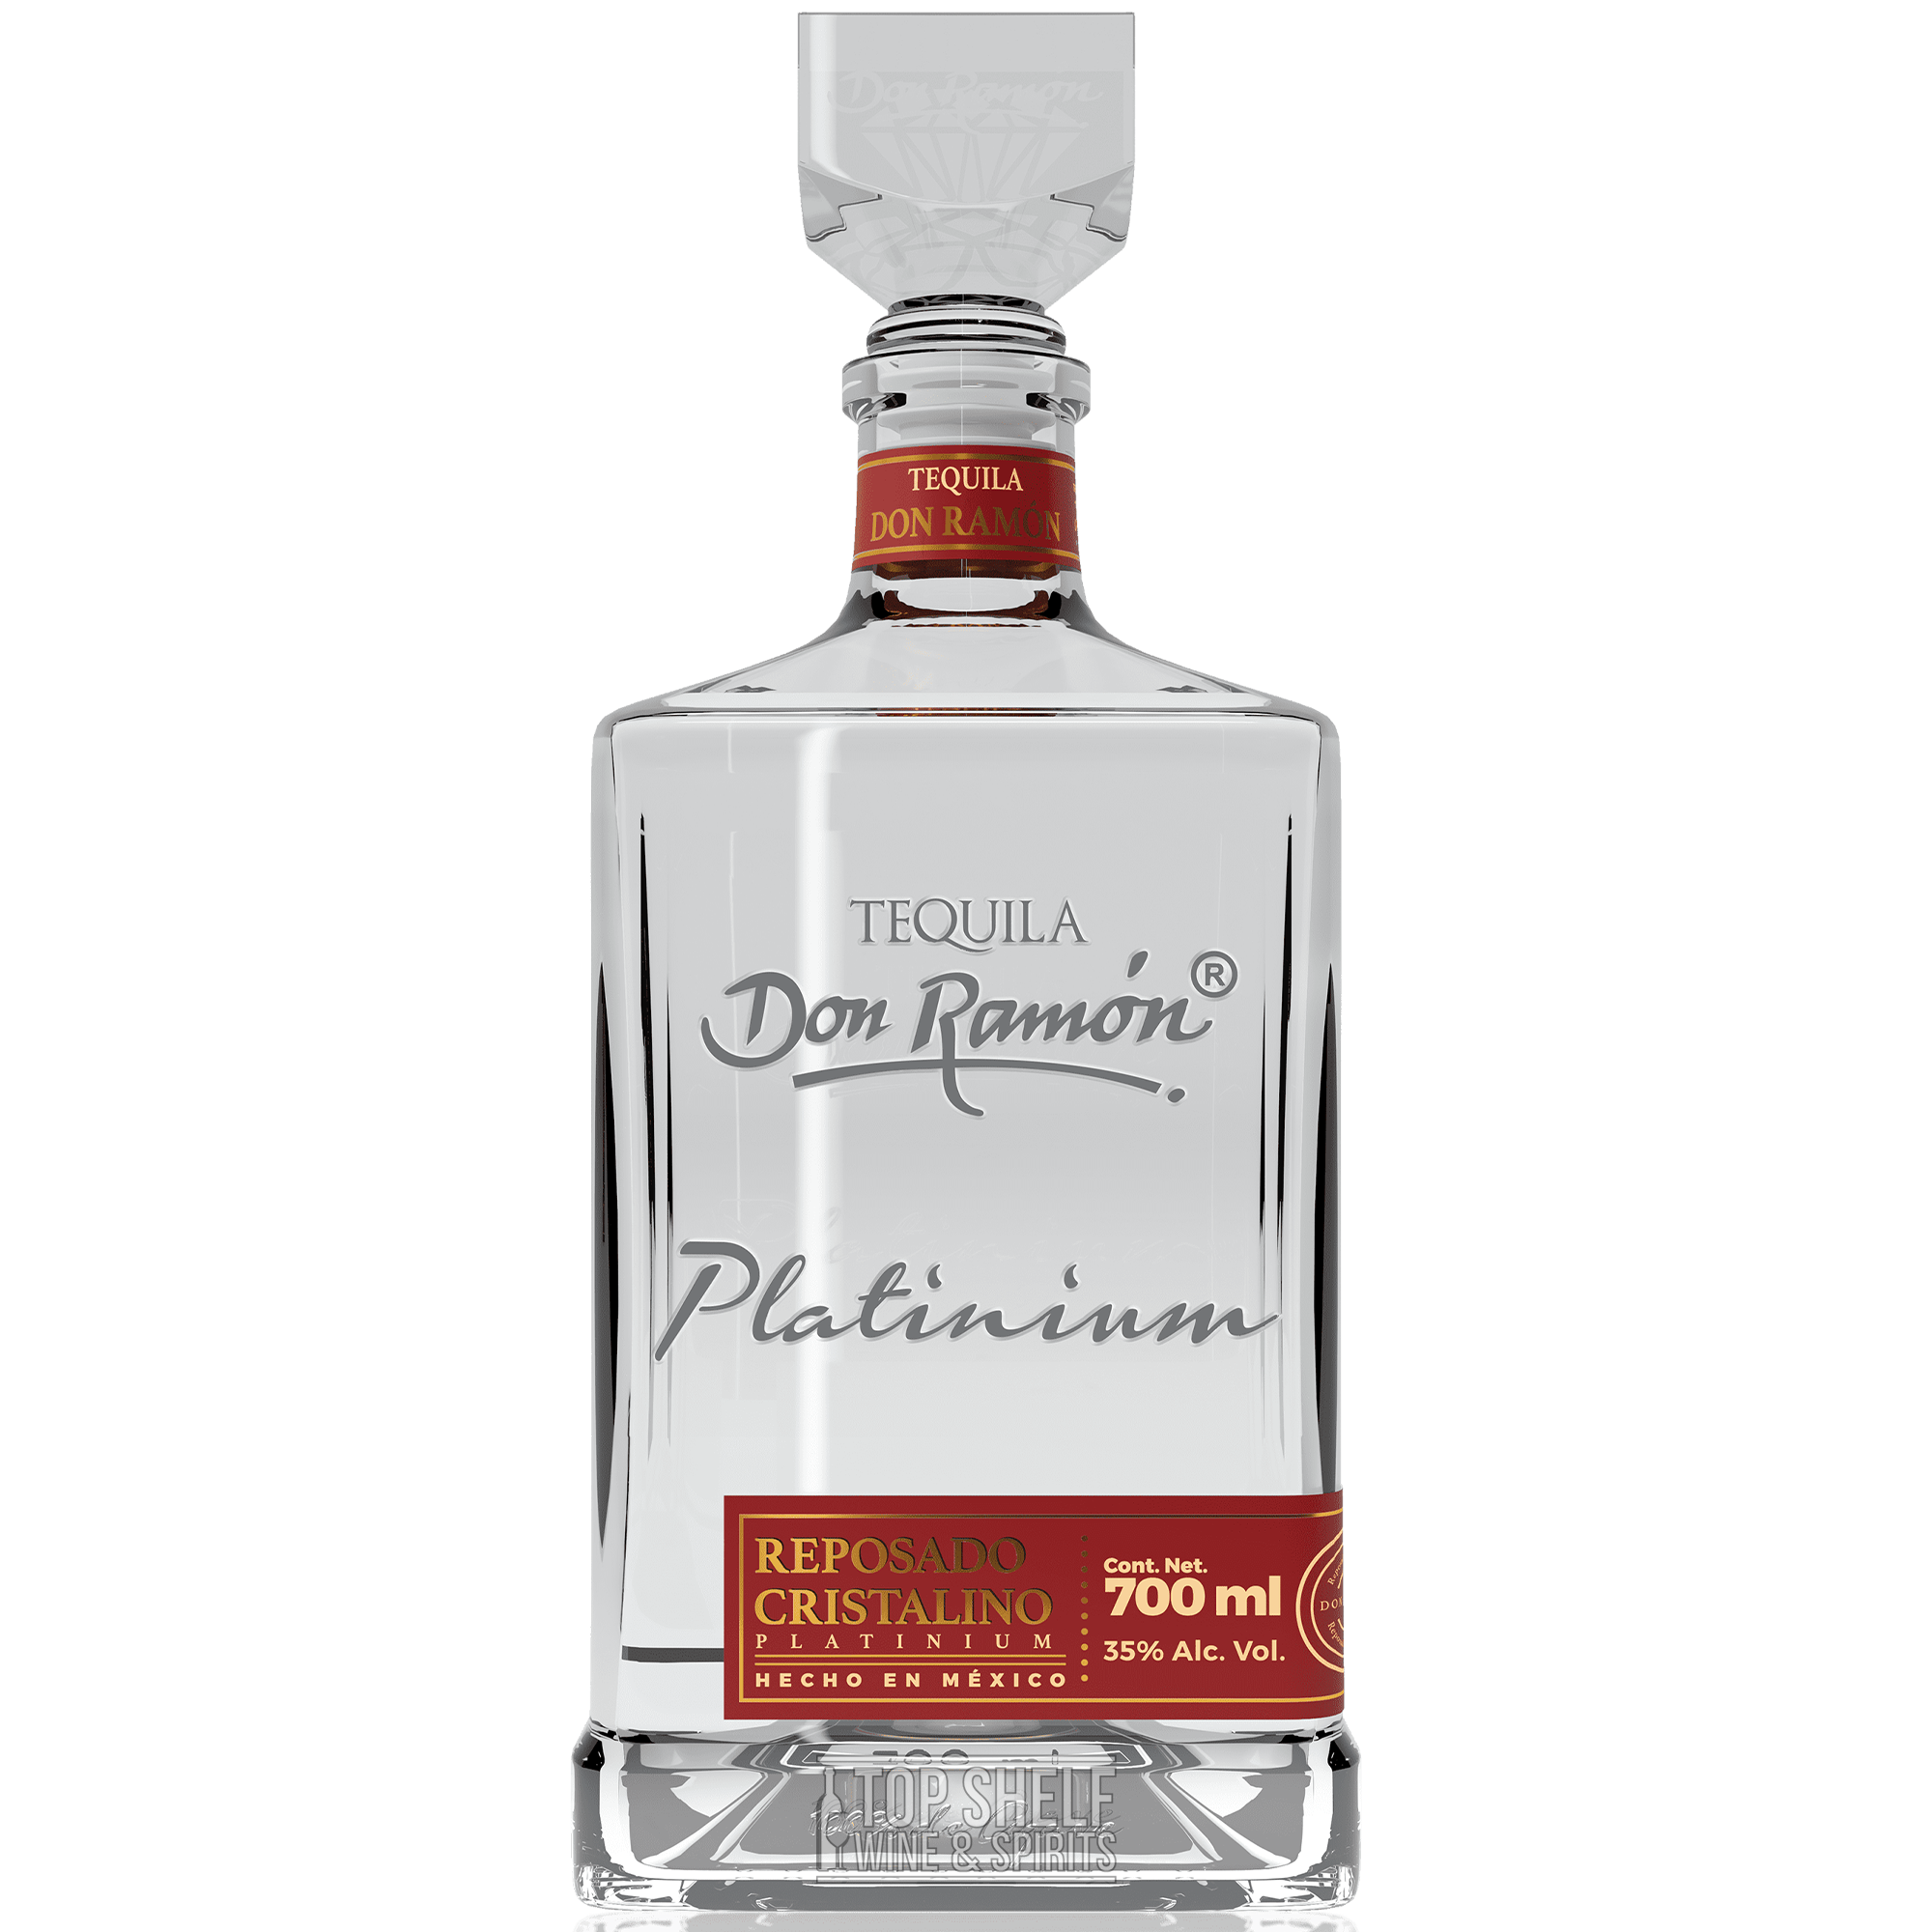 Don Ramon Platinium Tequila Cristalino Reposado